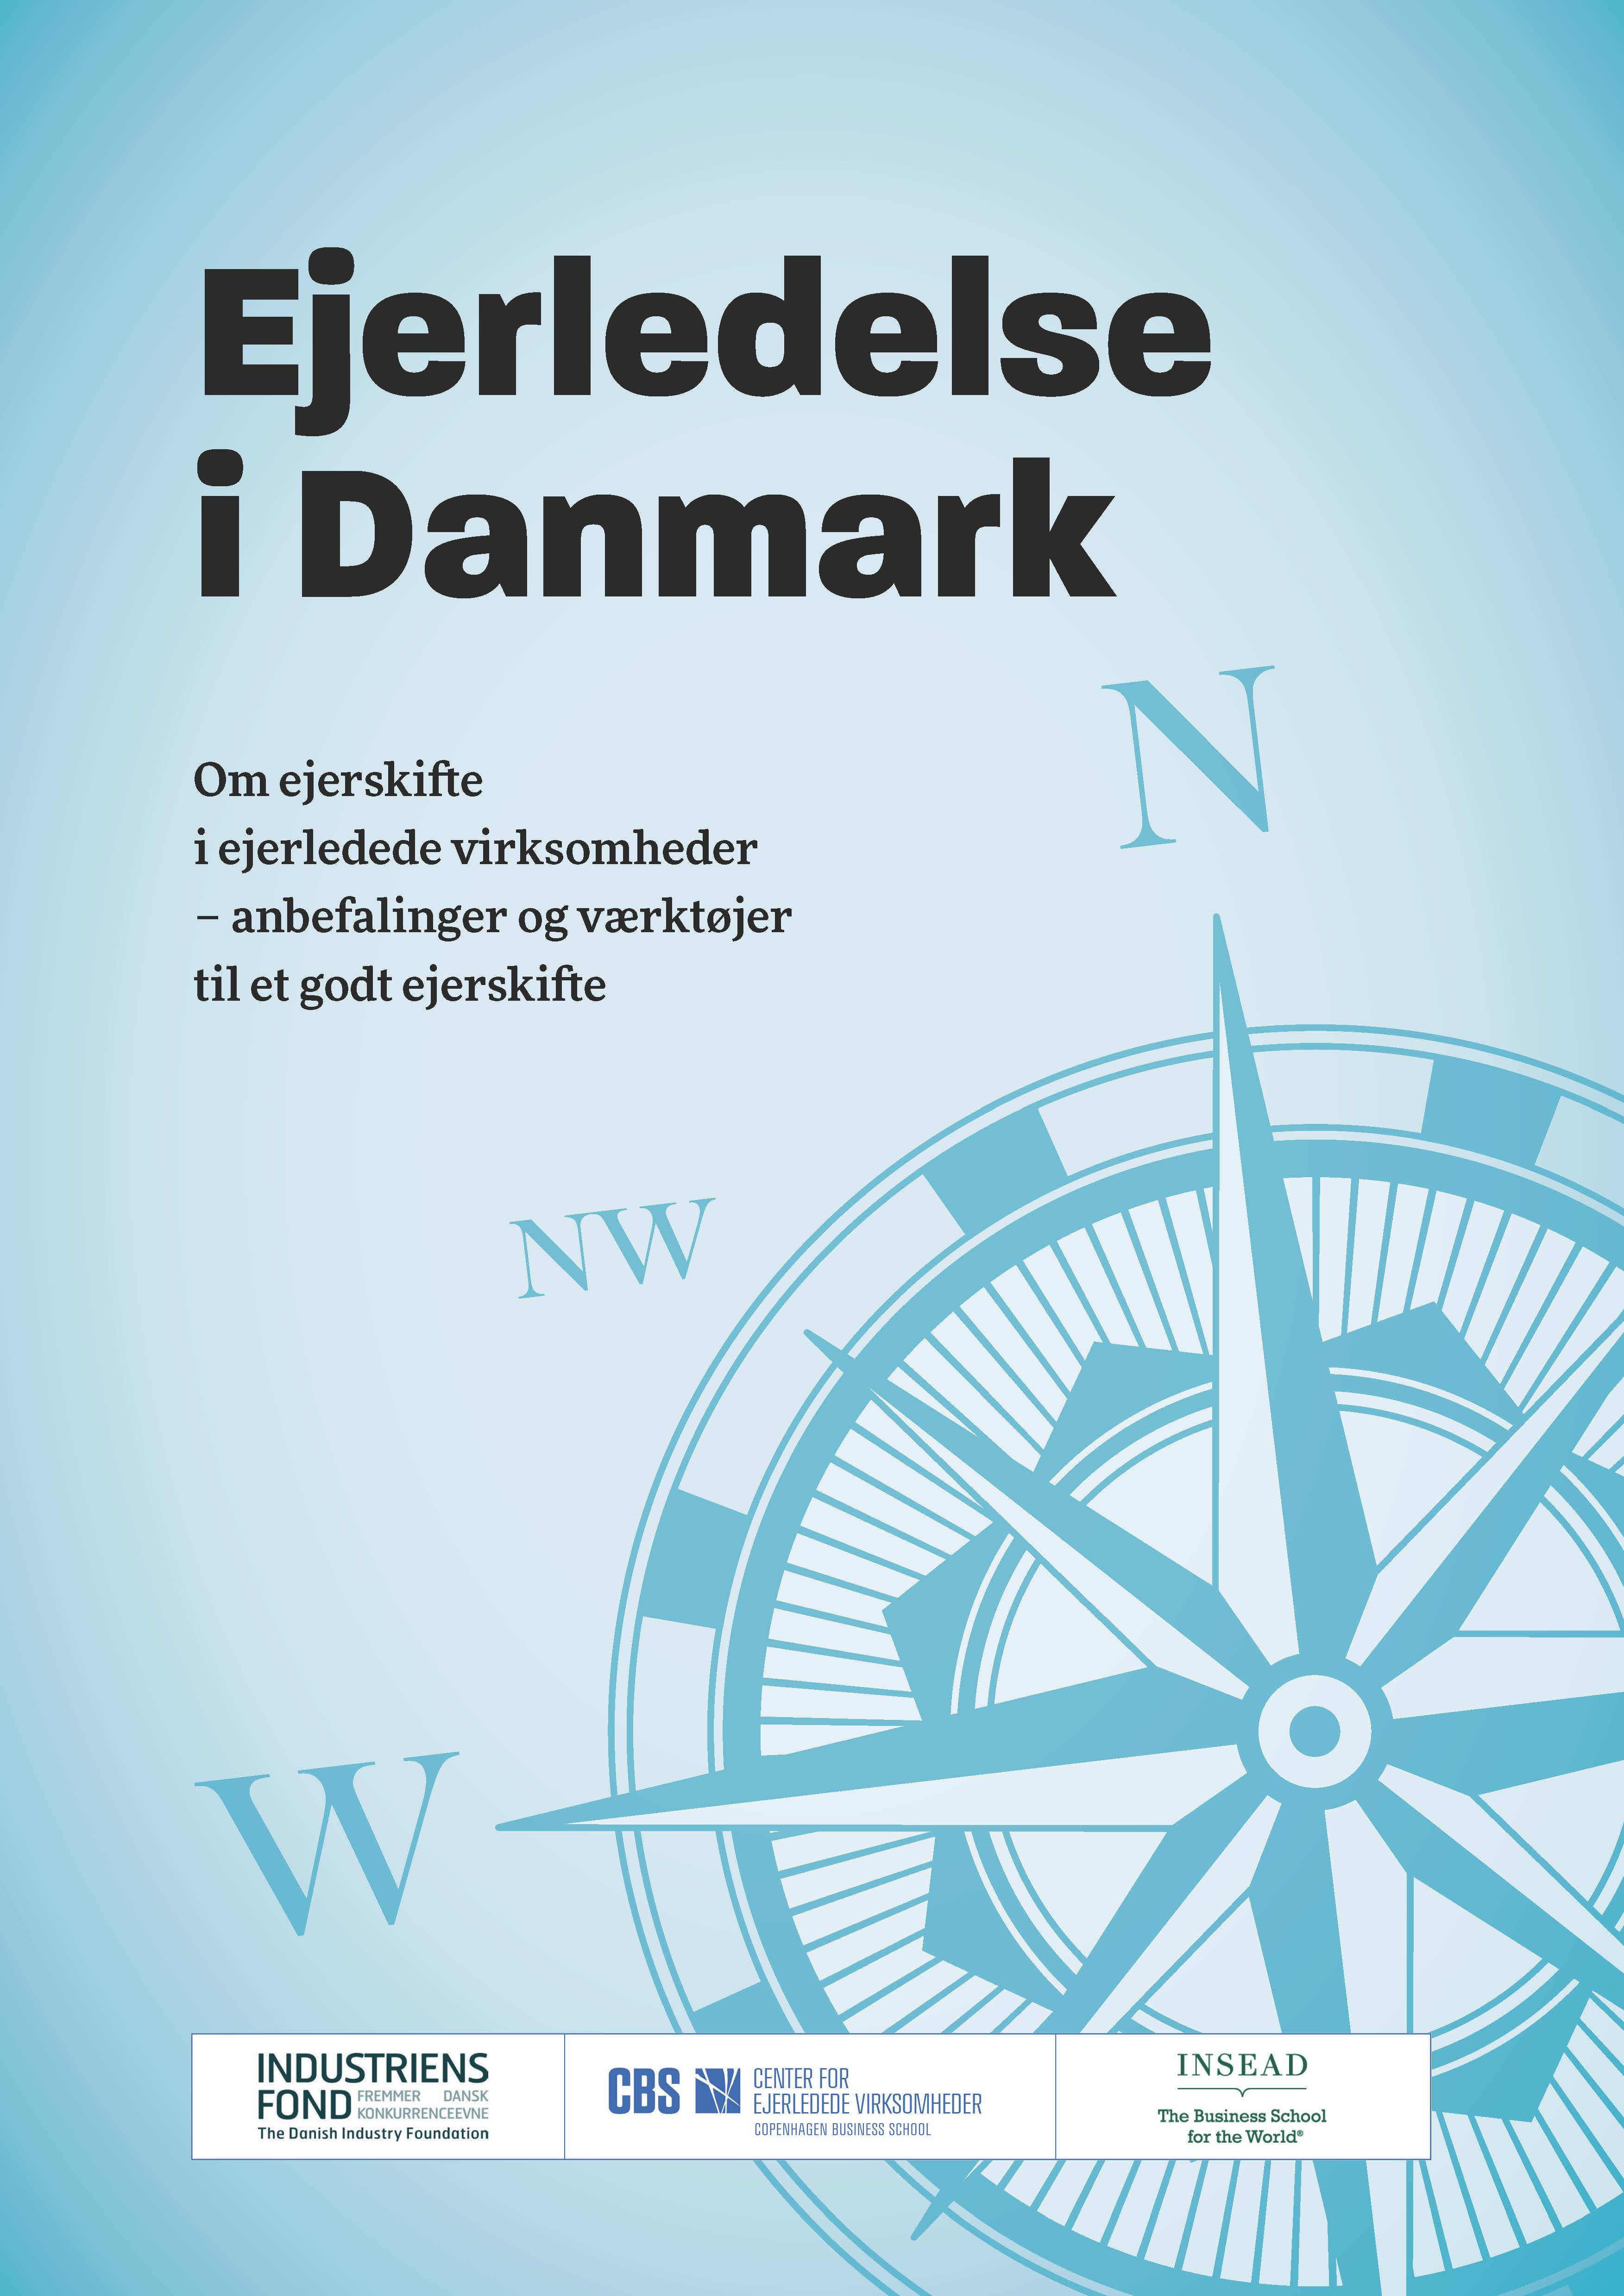 Billede af forsiden til rapporten: Ejerledelse i Danmark